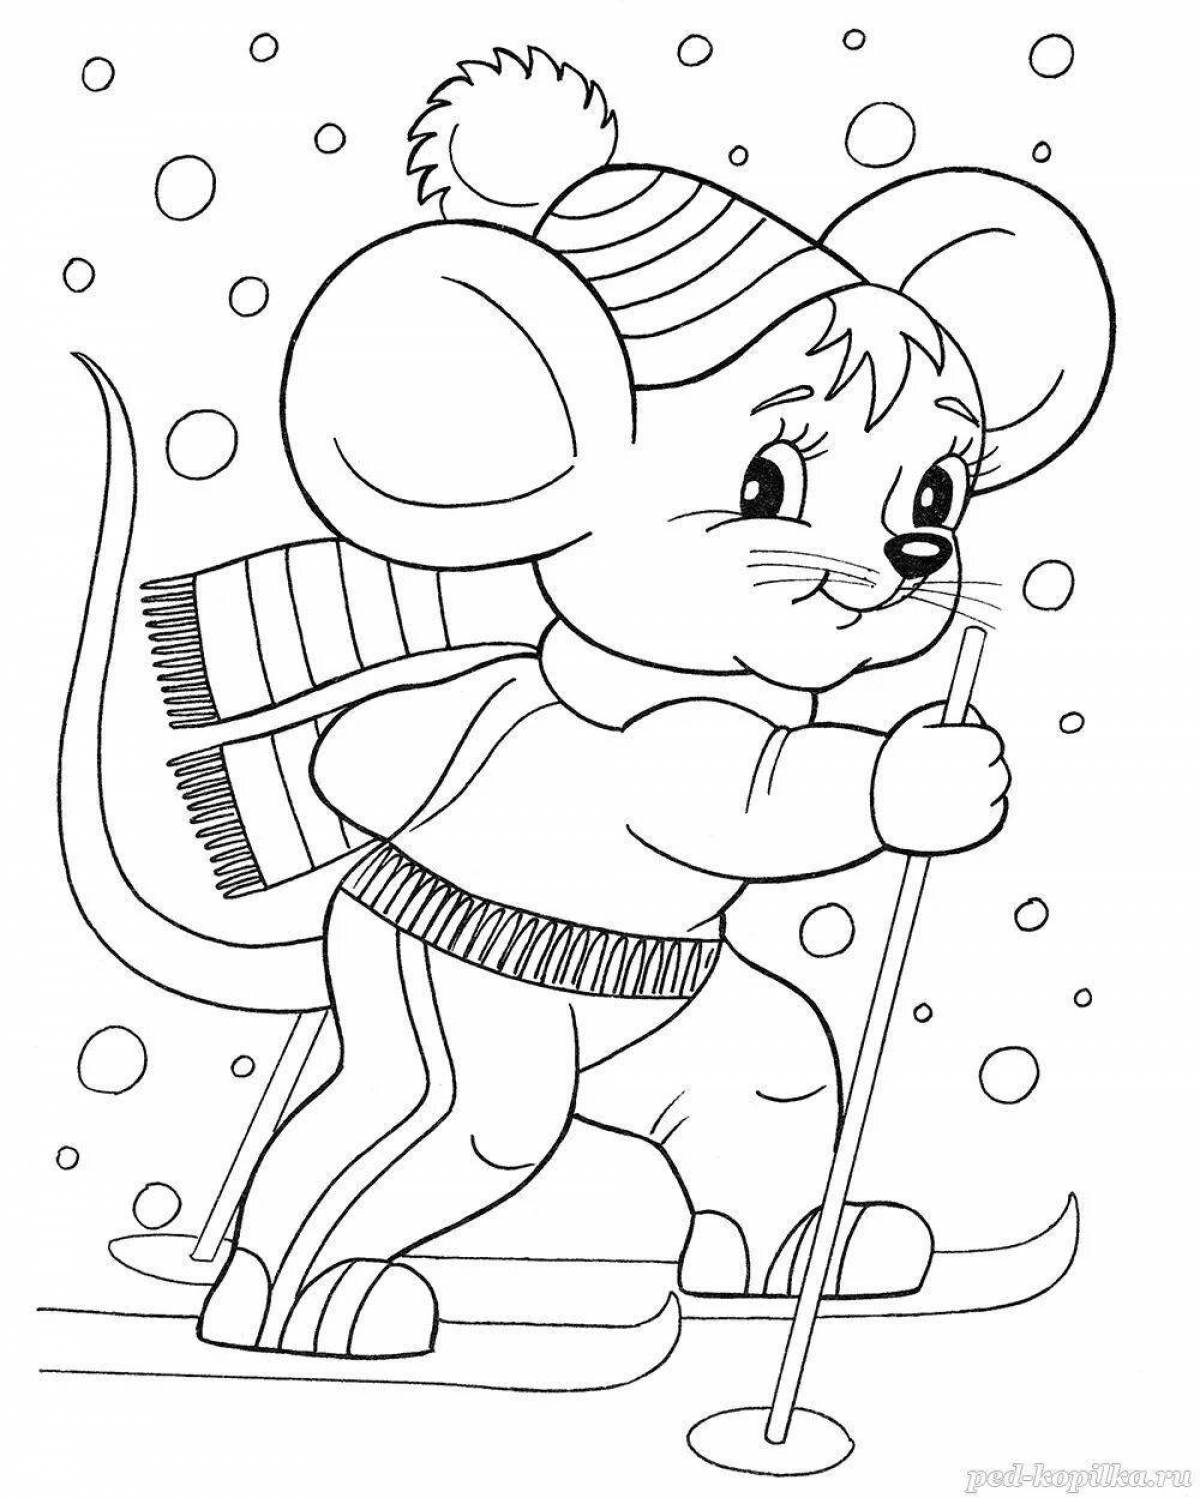 Раскраски Мышь для детей — Распечатать бесплатно